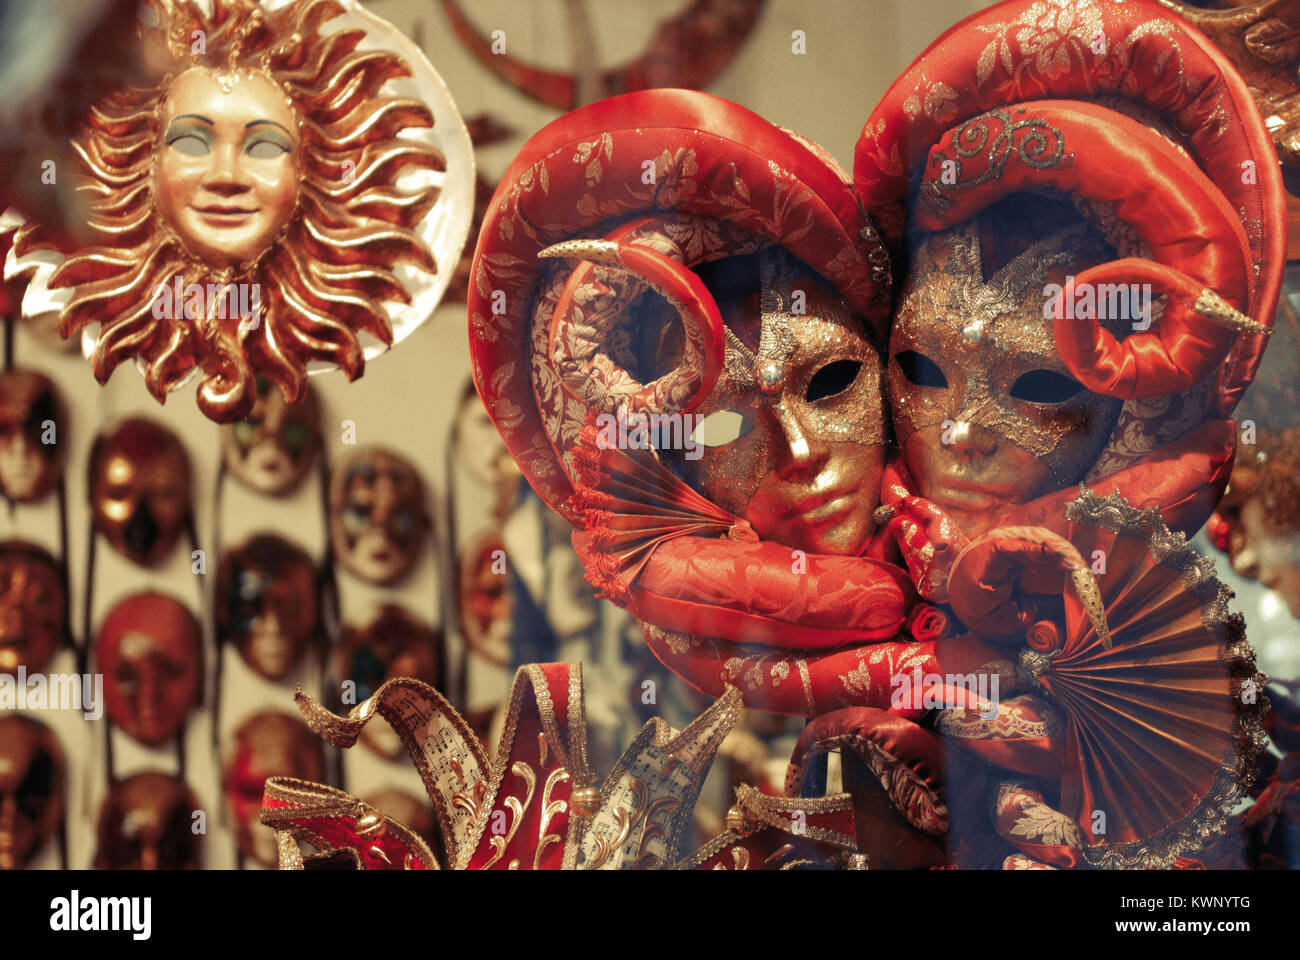 Traditionelle venezianische Maske im Store auf Straße, Venedig Italien. Karneval von Venedig. Stockfoto